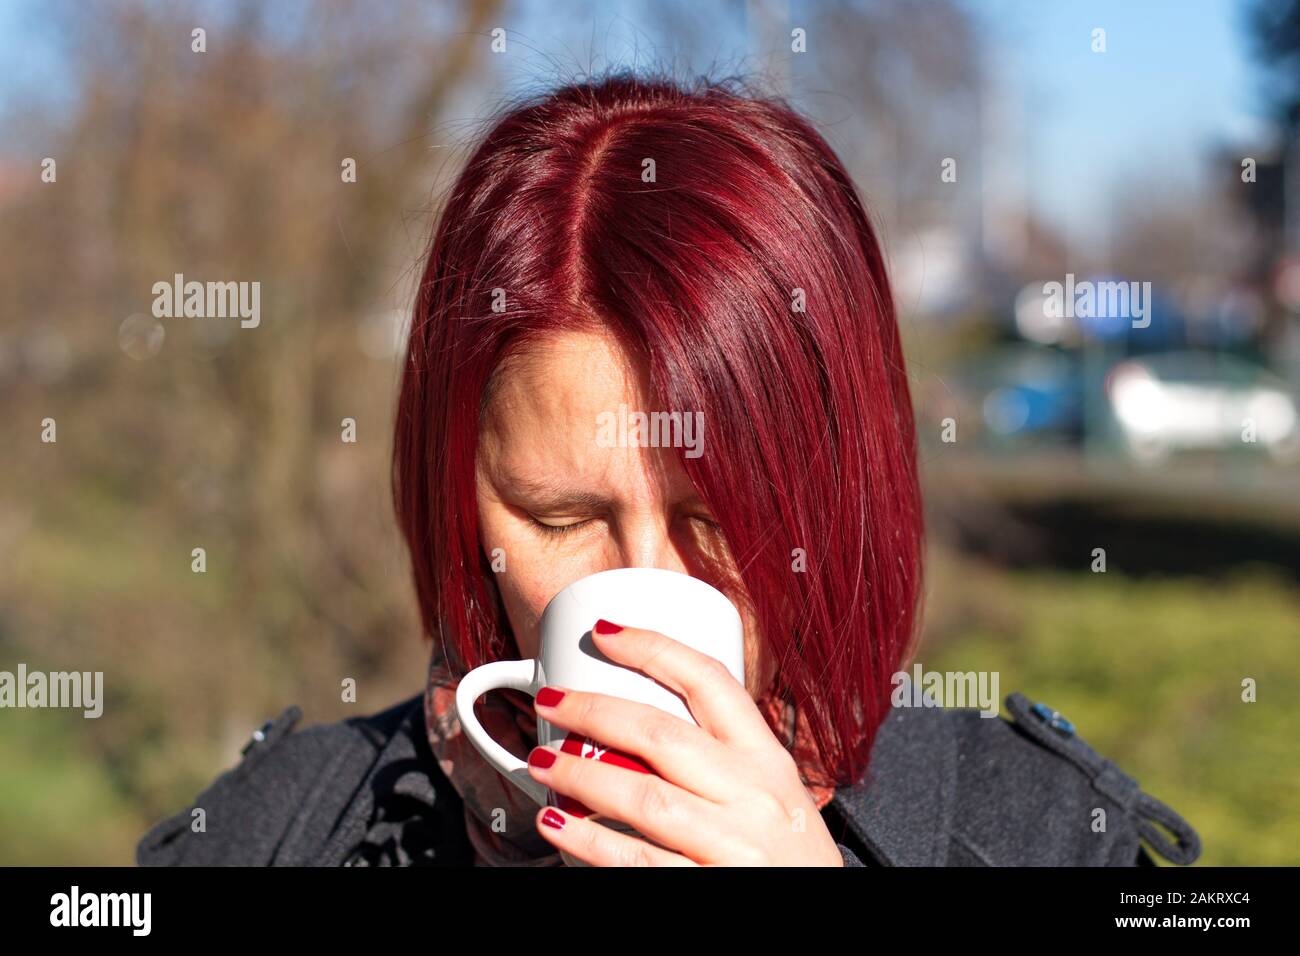 Portrait de la jeune femme à poil rouge avec une tasse de café Banque D'Images